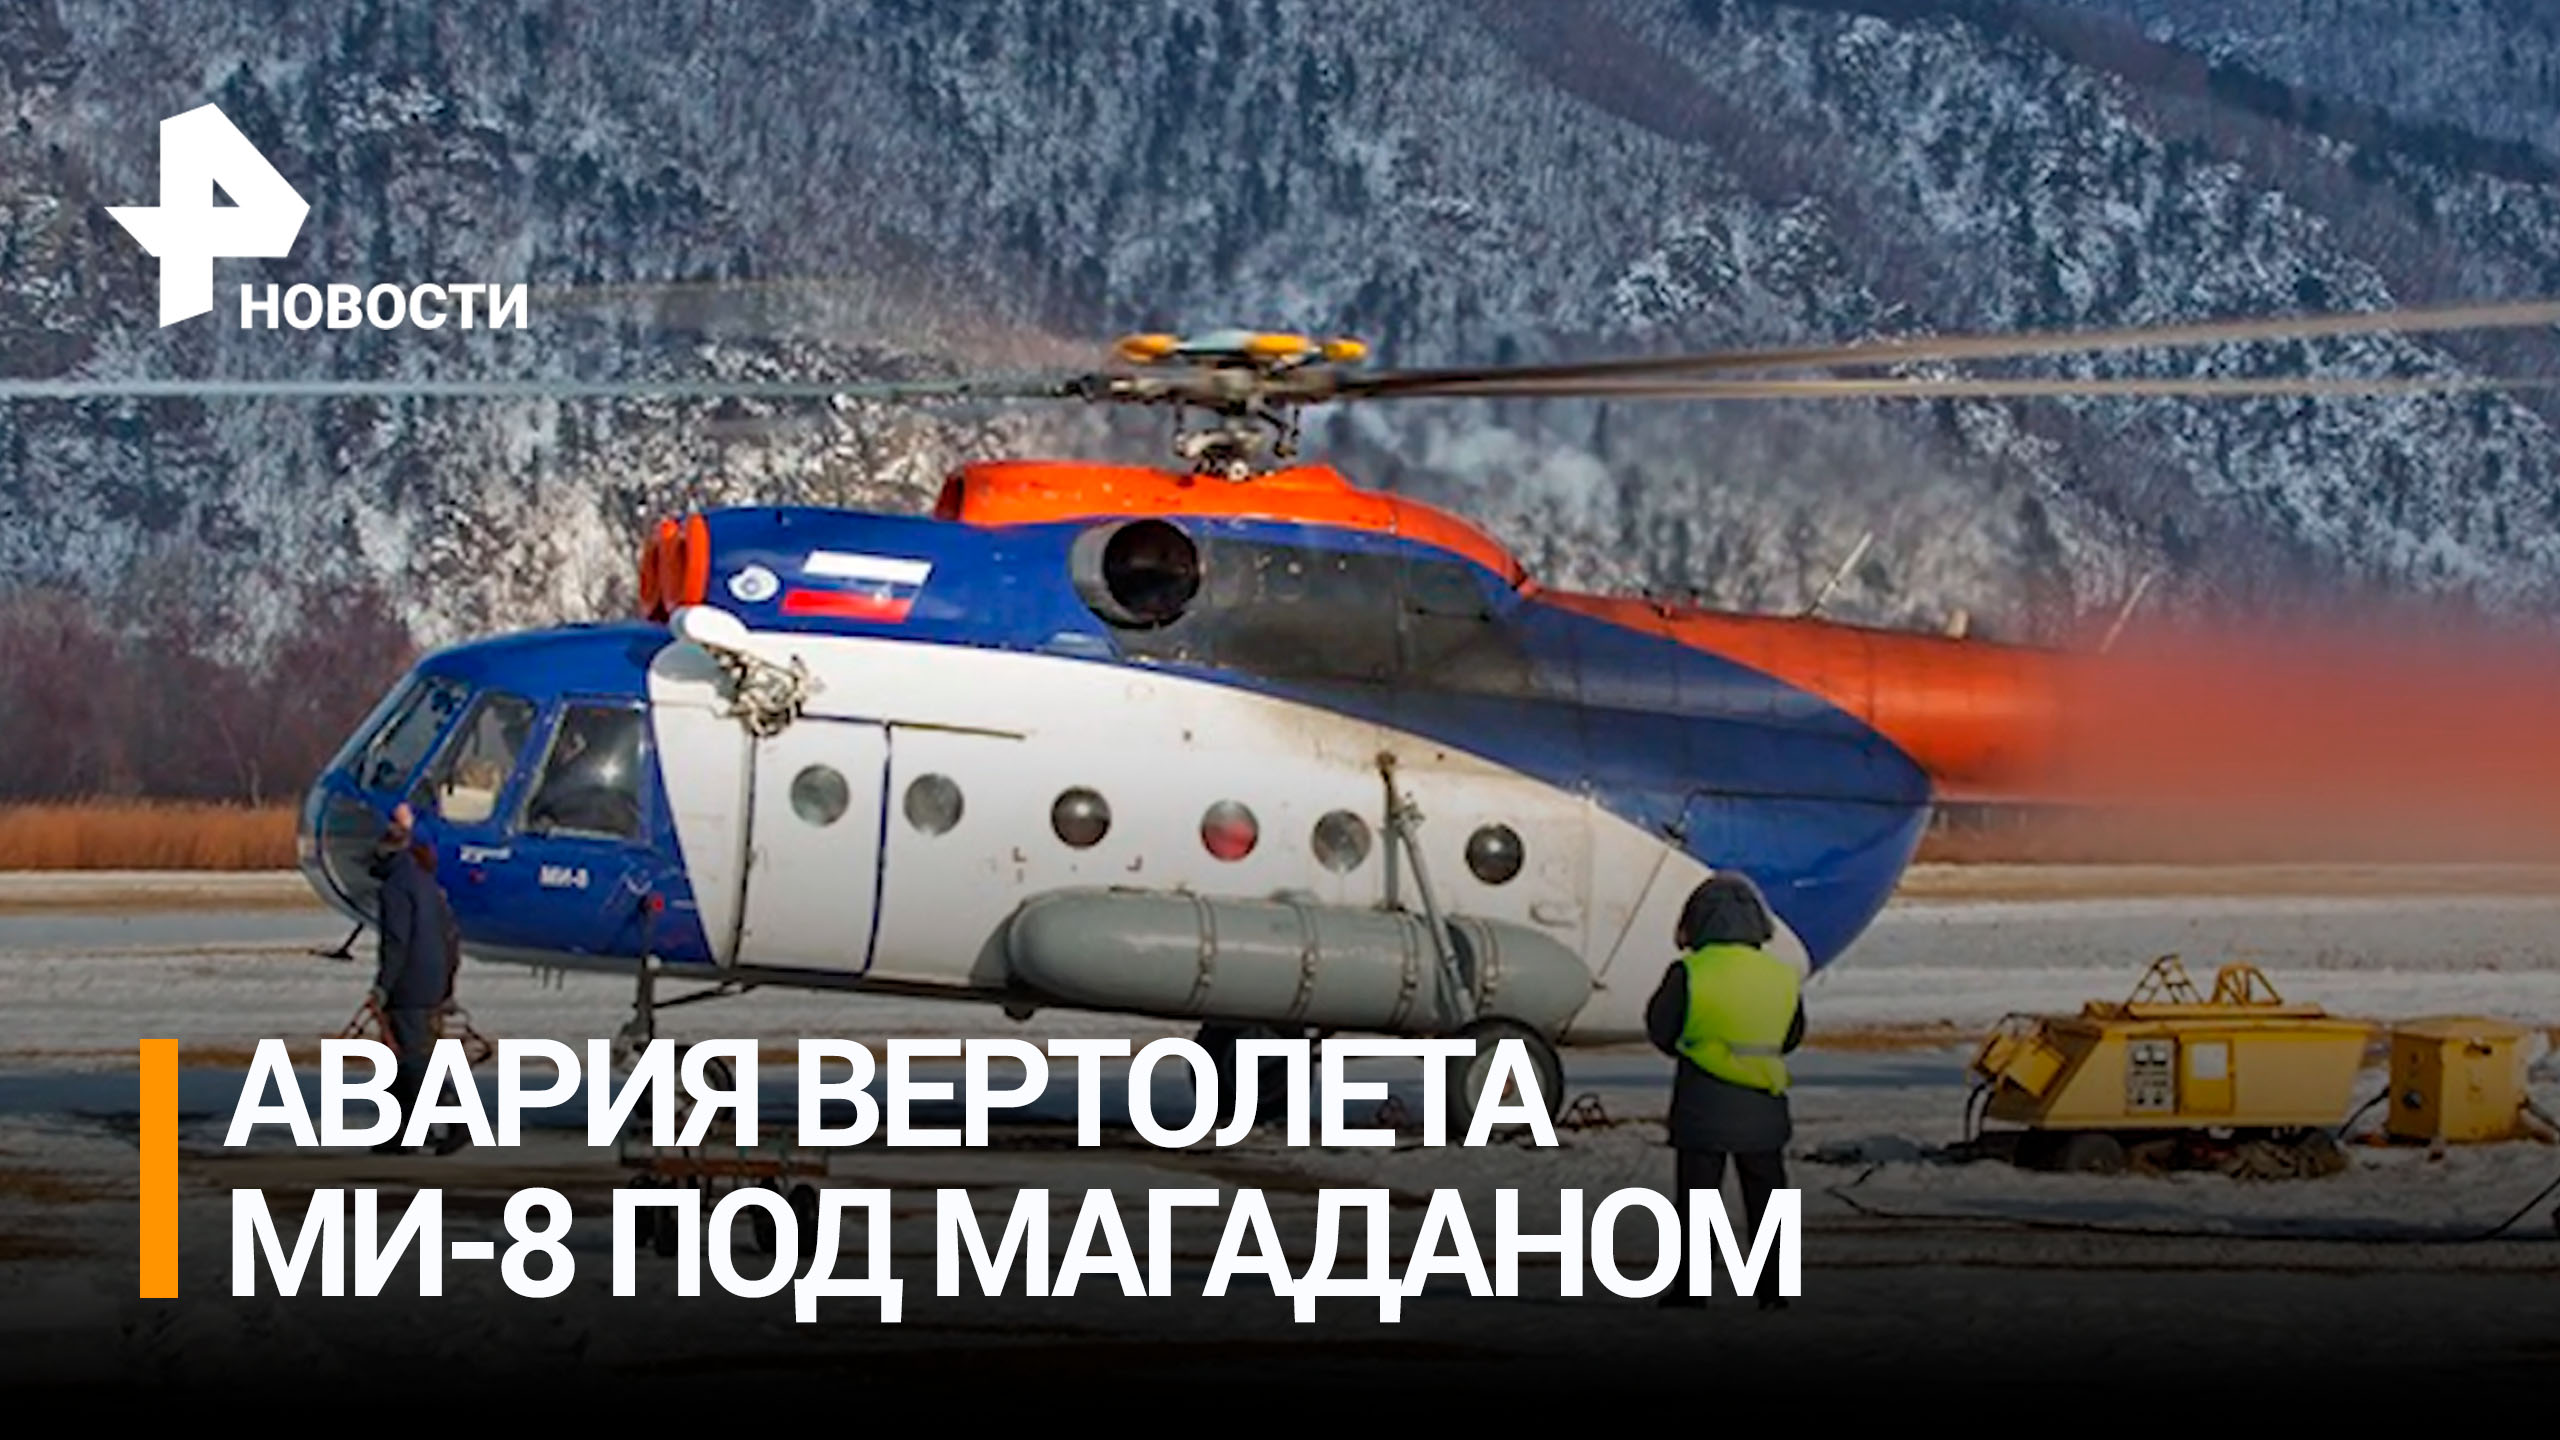 Вертолет Ми-8 потерпел крушение в Магаданской области / РЕН Новости